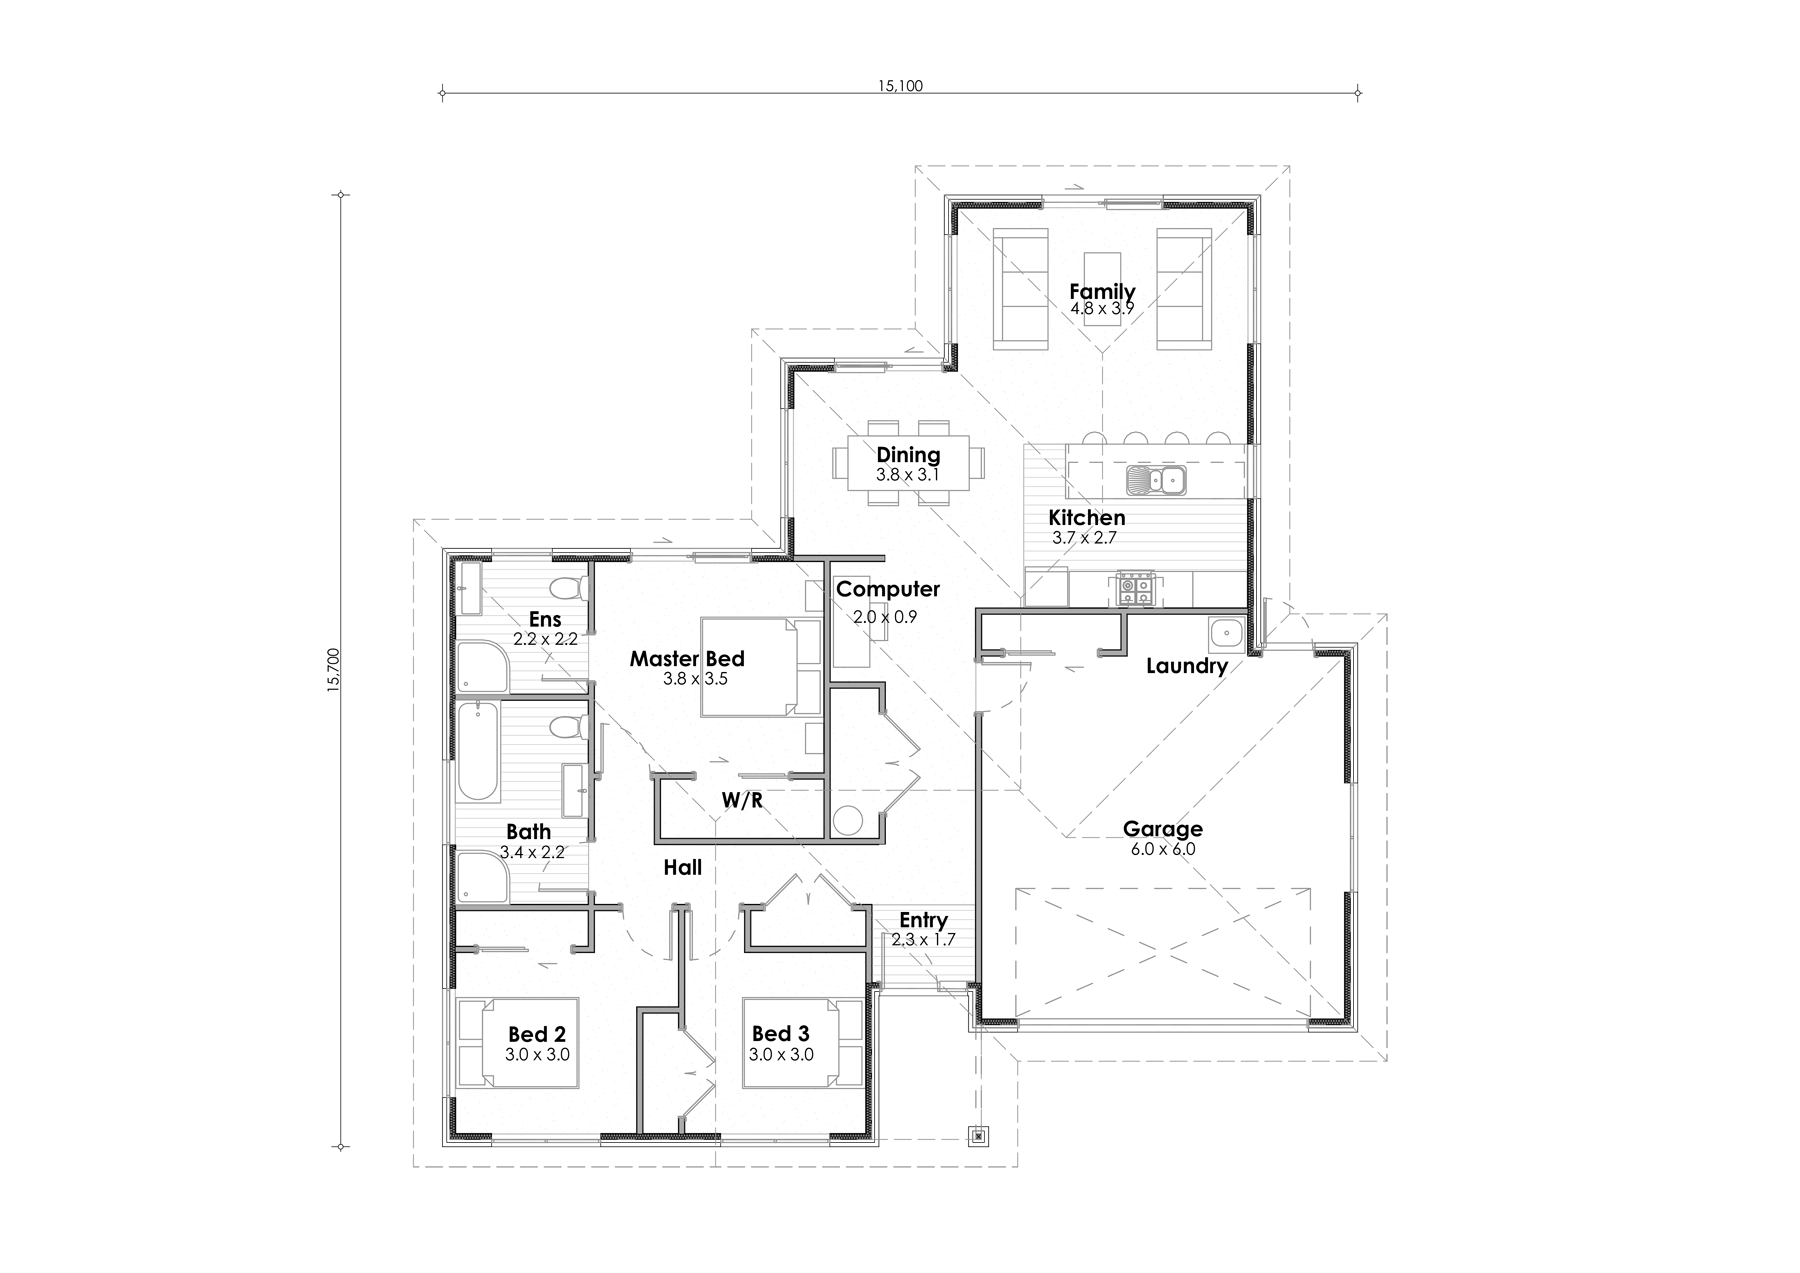 Haast House Plan 170 sqm, 3 bedrooms, 2 bathrooms